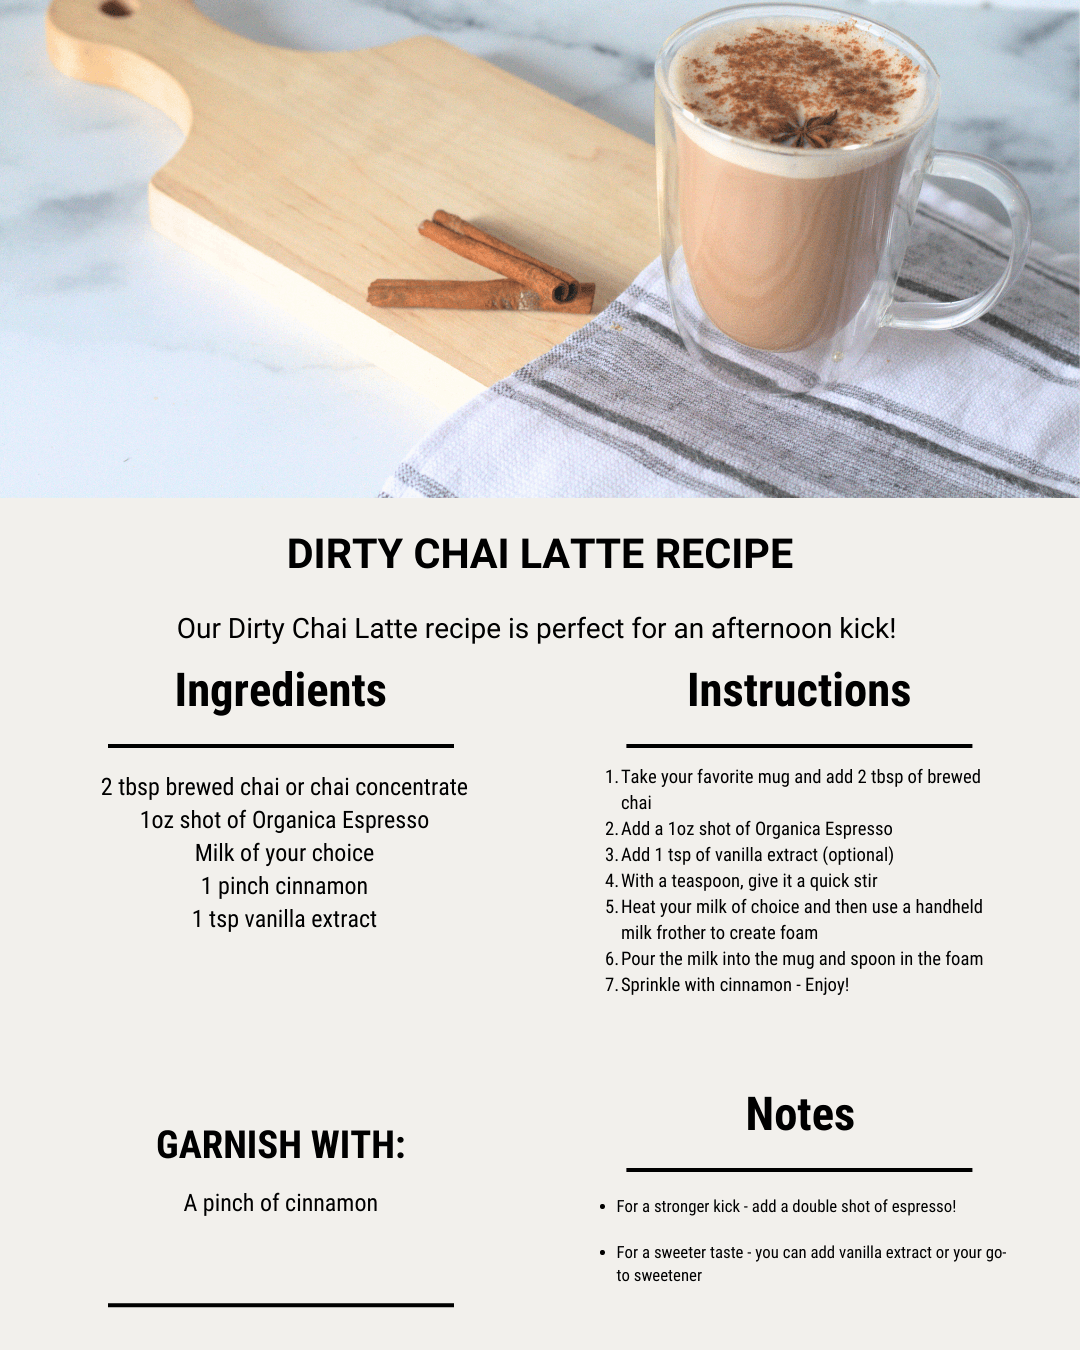 The steps to make Zavida's Dirty Chai Latte recipe